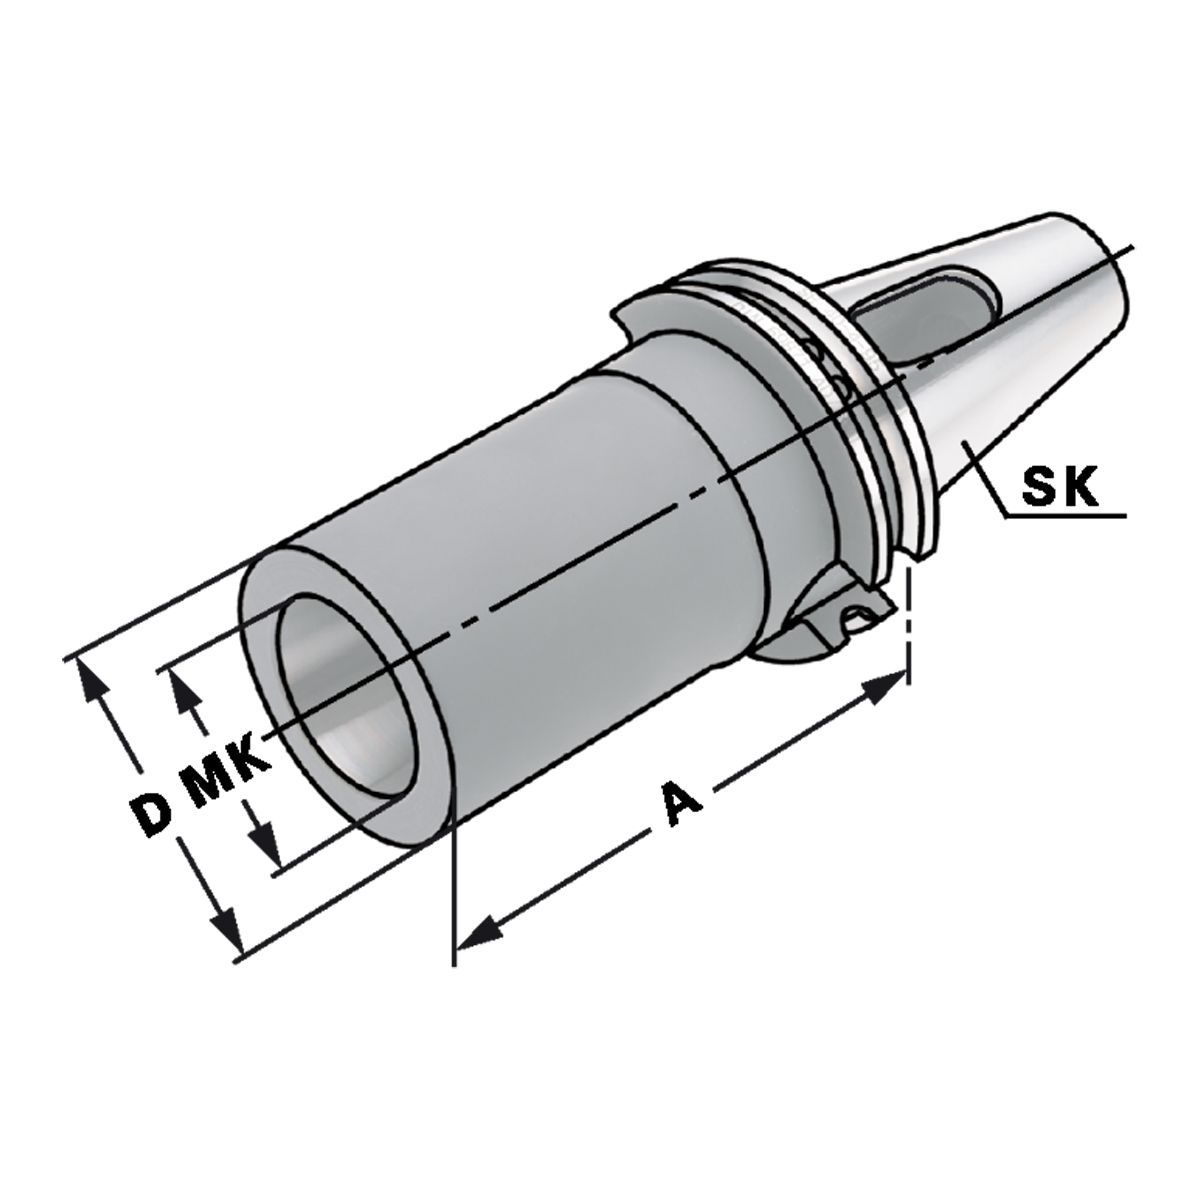 Zwischenhülse SK 40-4-95 für MK mit Austreiblappen DIN 6383